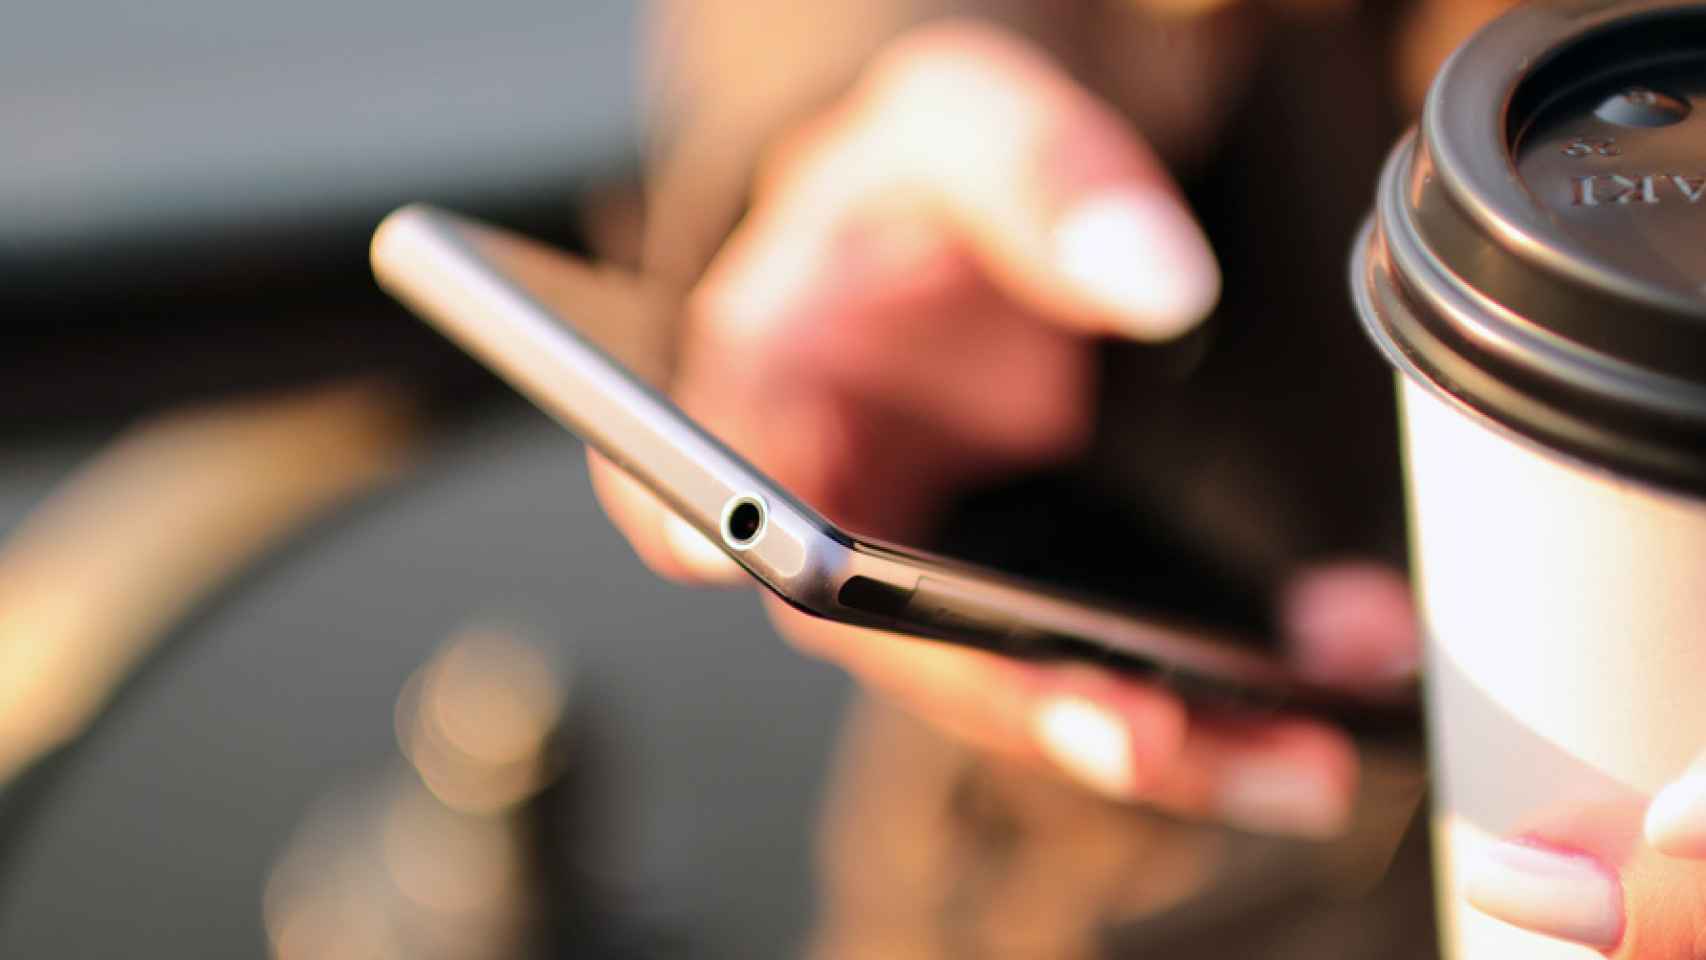 6 trastornos por usar el móvil demasiado que puedes sufrir